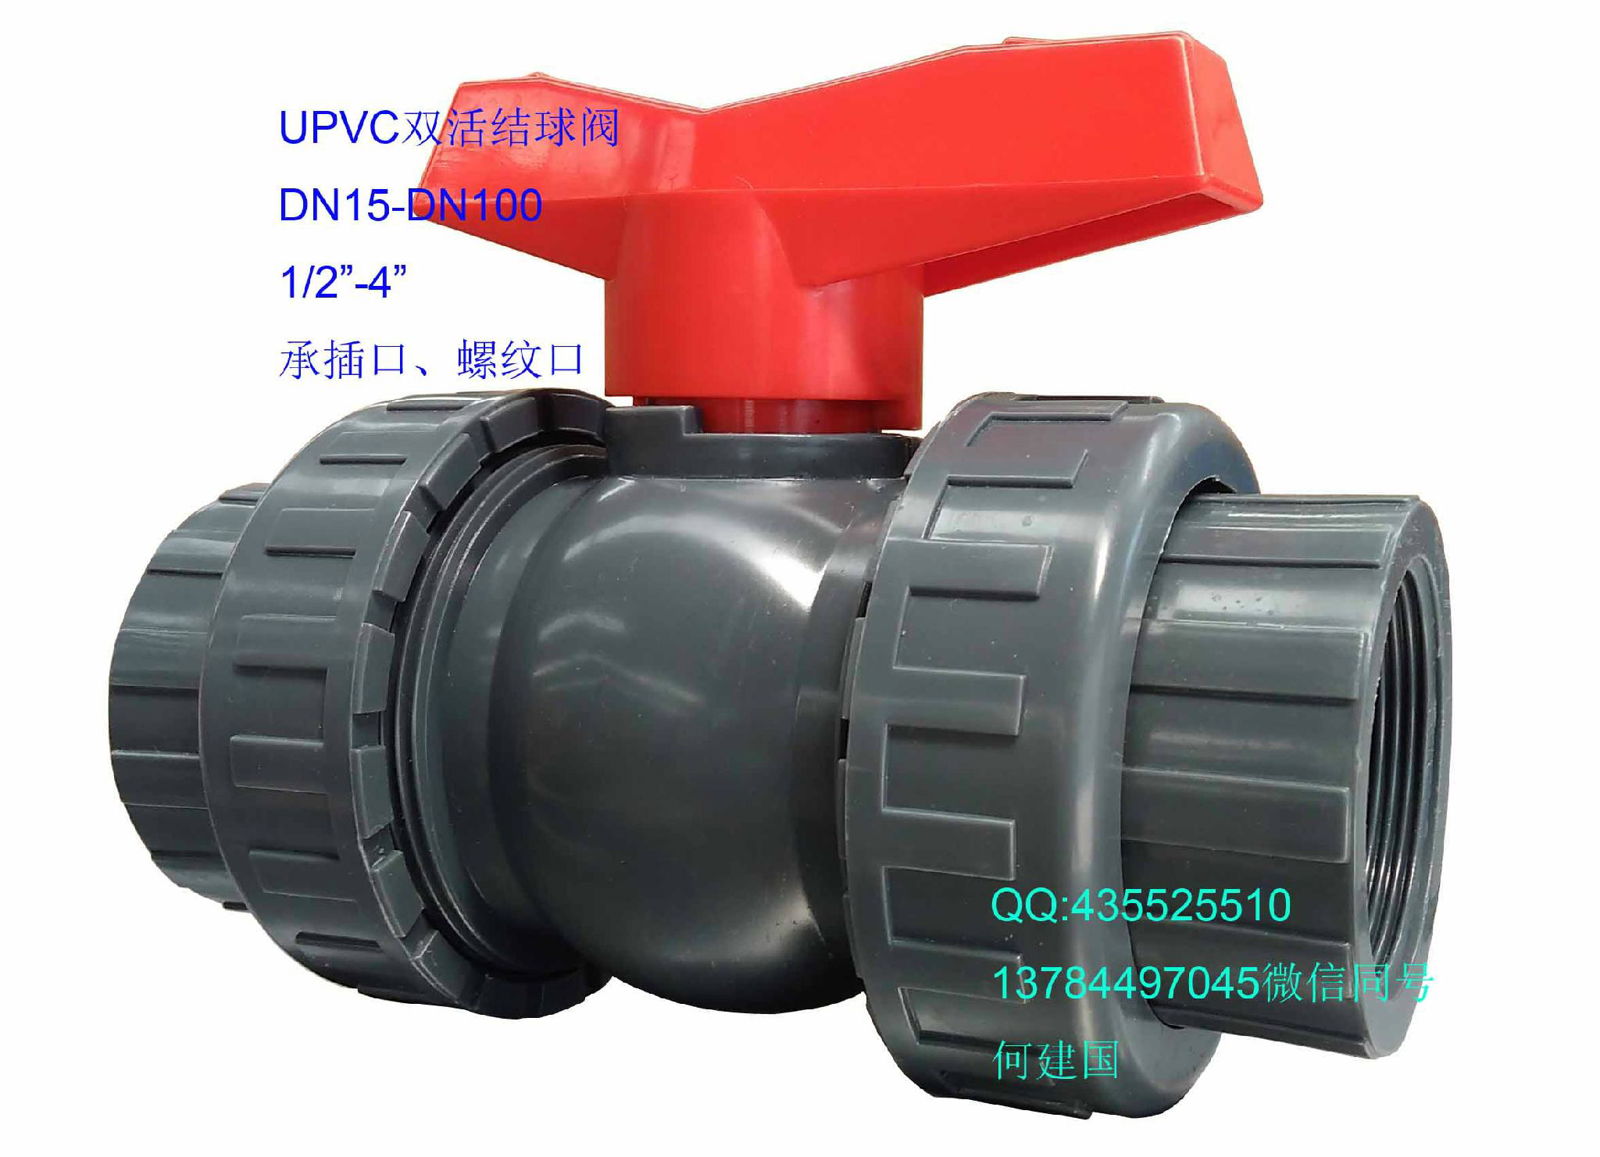 PVC ball valve HeJianGuo 5